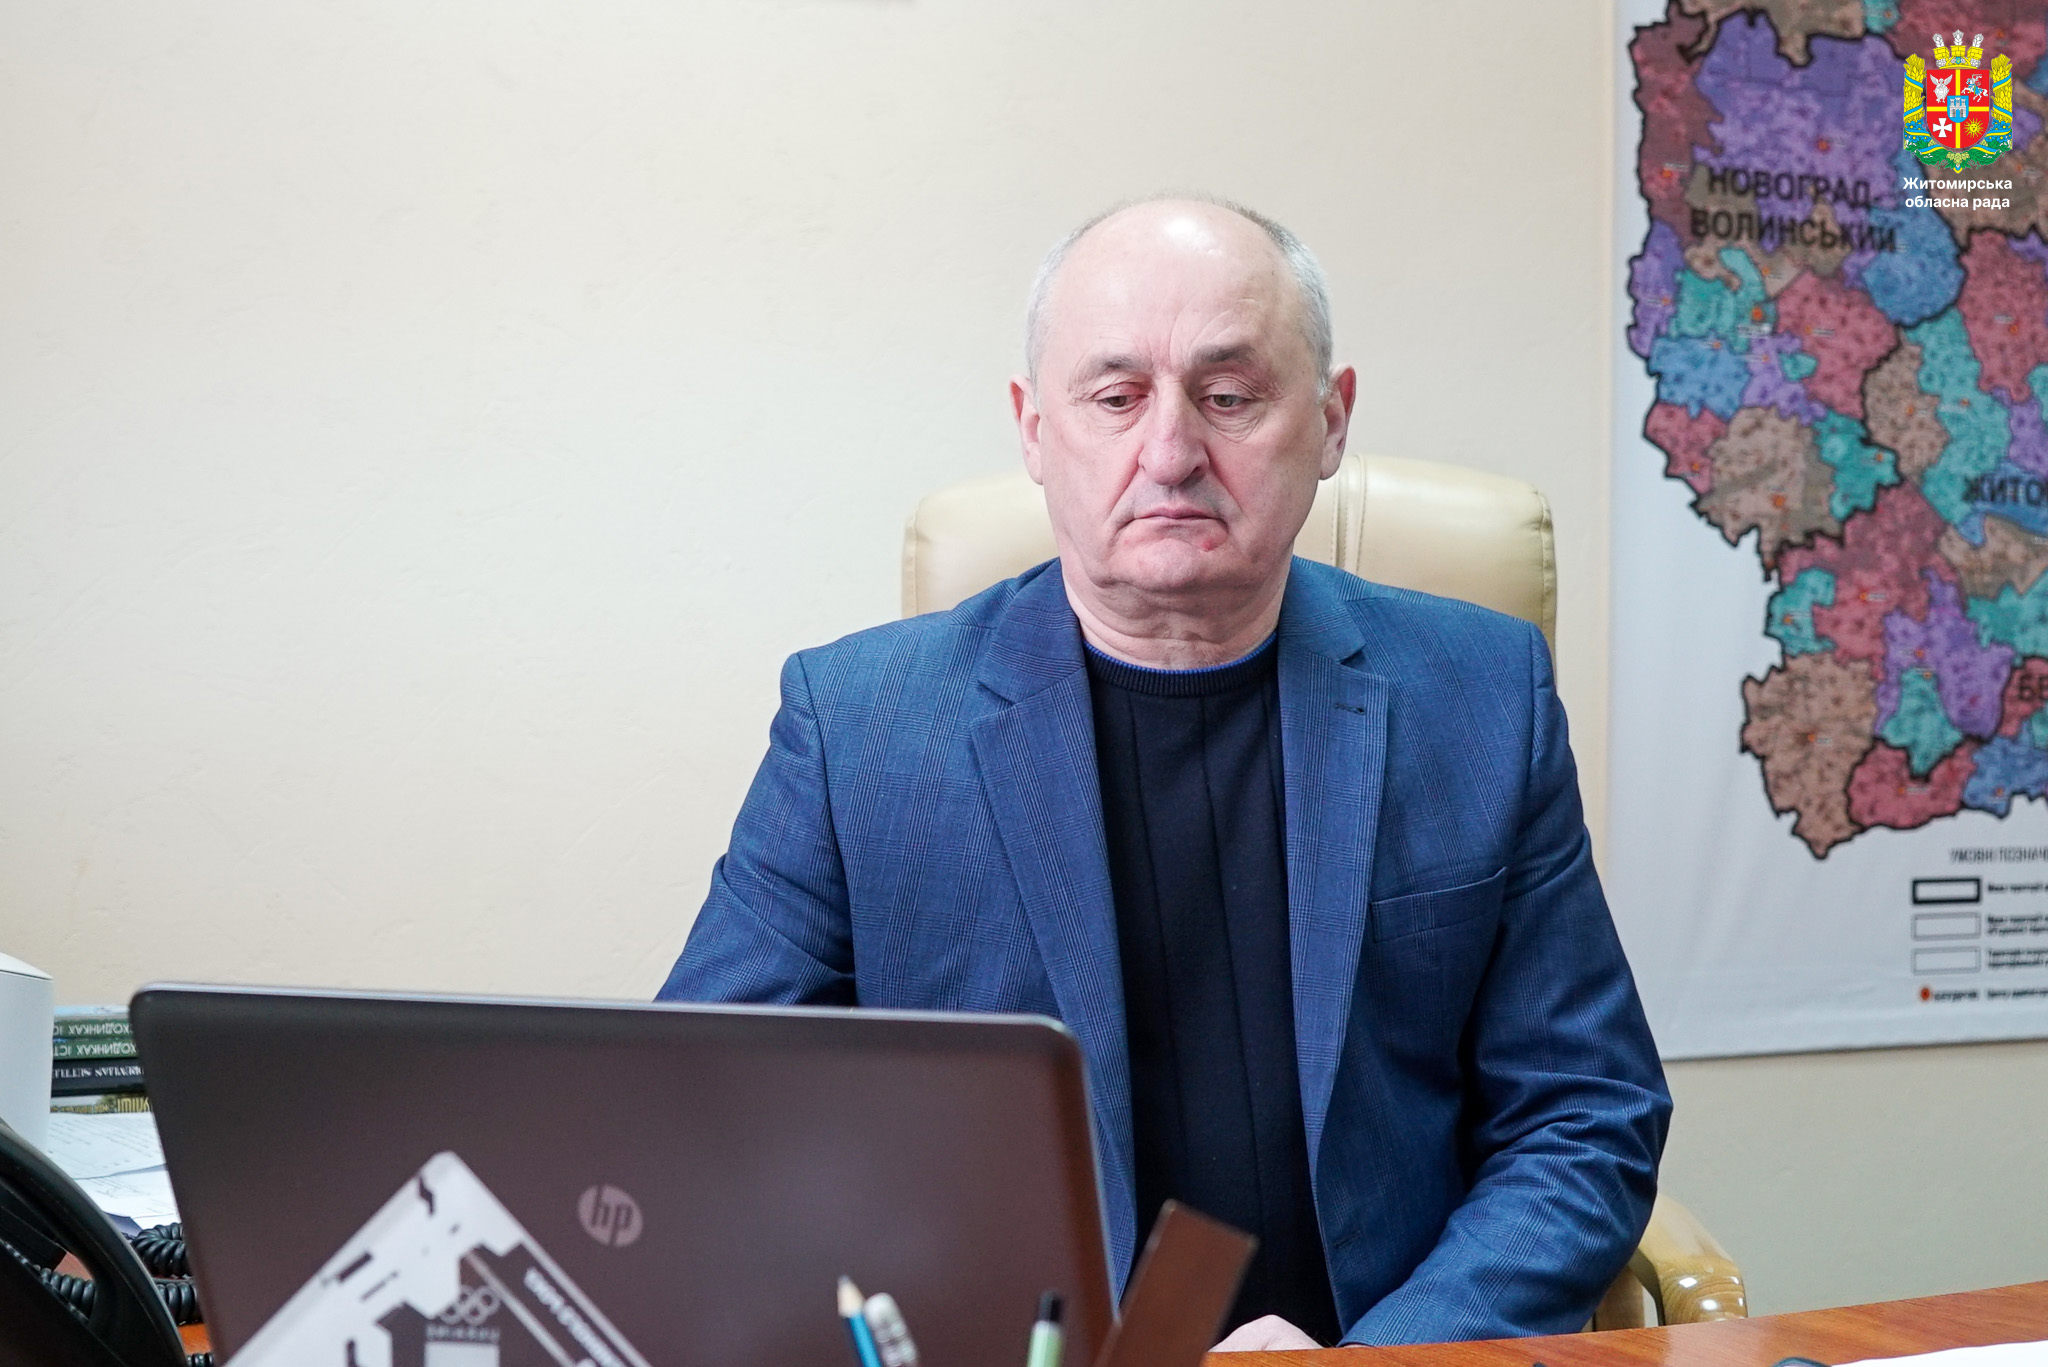 Володимир Ширма взяв участь в Міжнародному саміті міст та регіонів у режимі онлайн